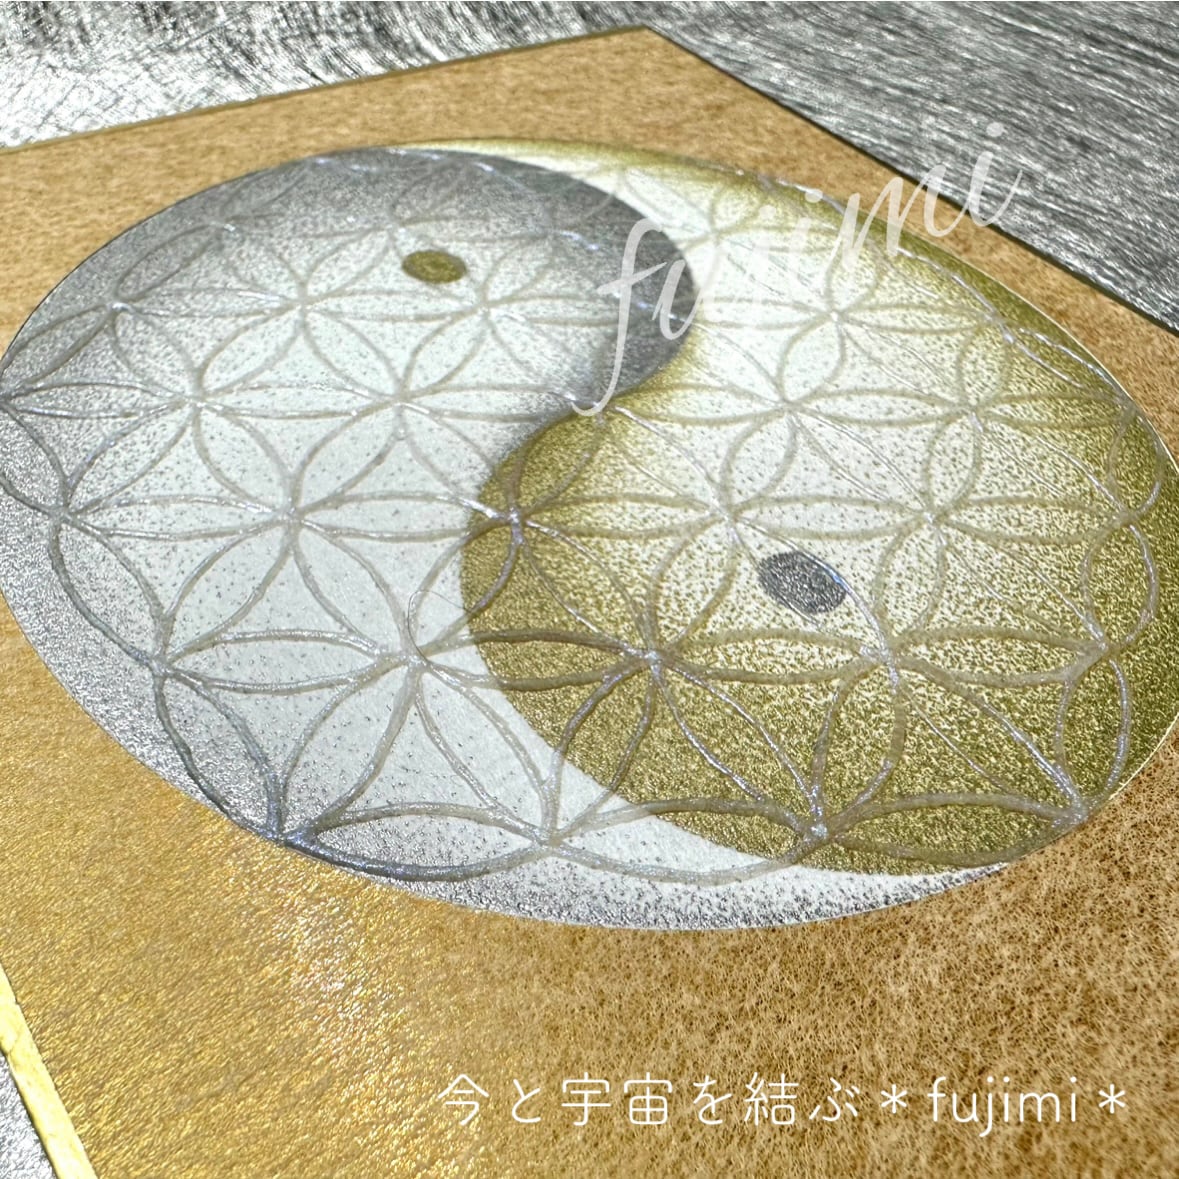 幸運アート【金縁の陰陽太極図フラワーオブライフ・点描画/神聖幾何学